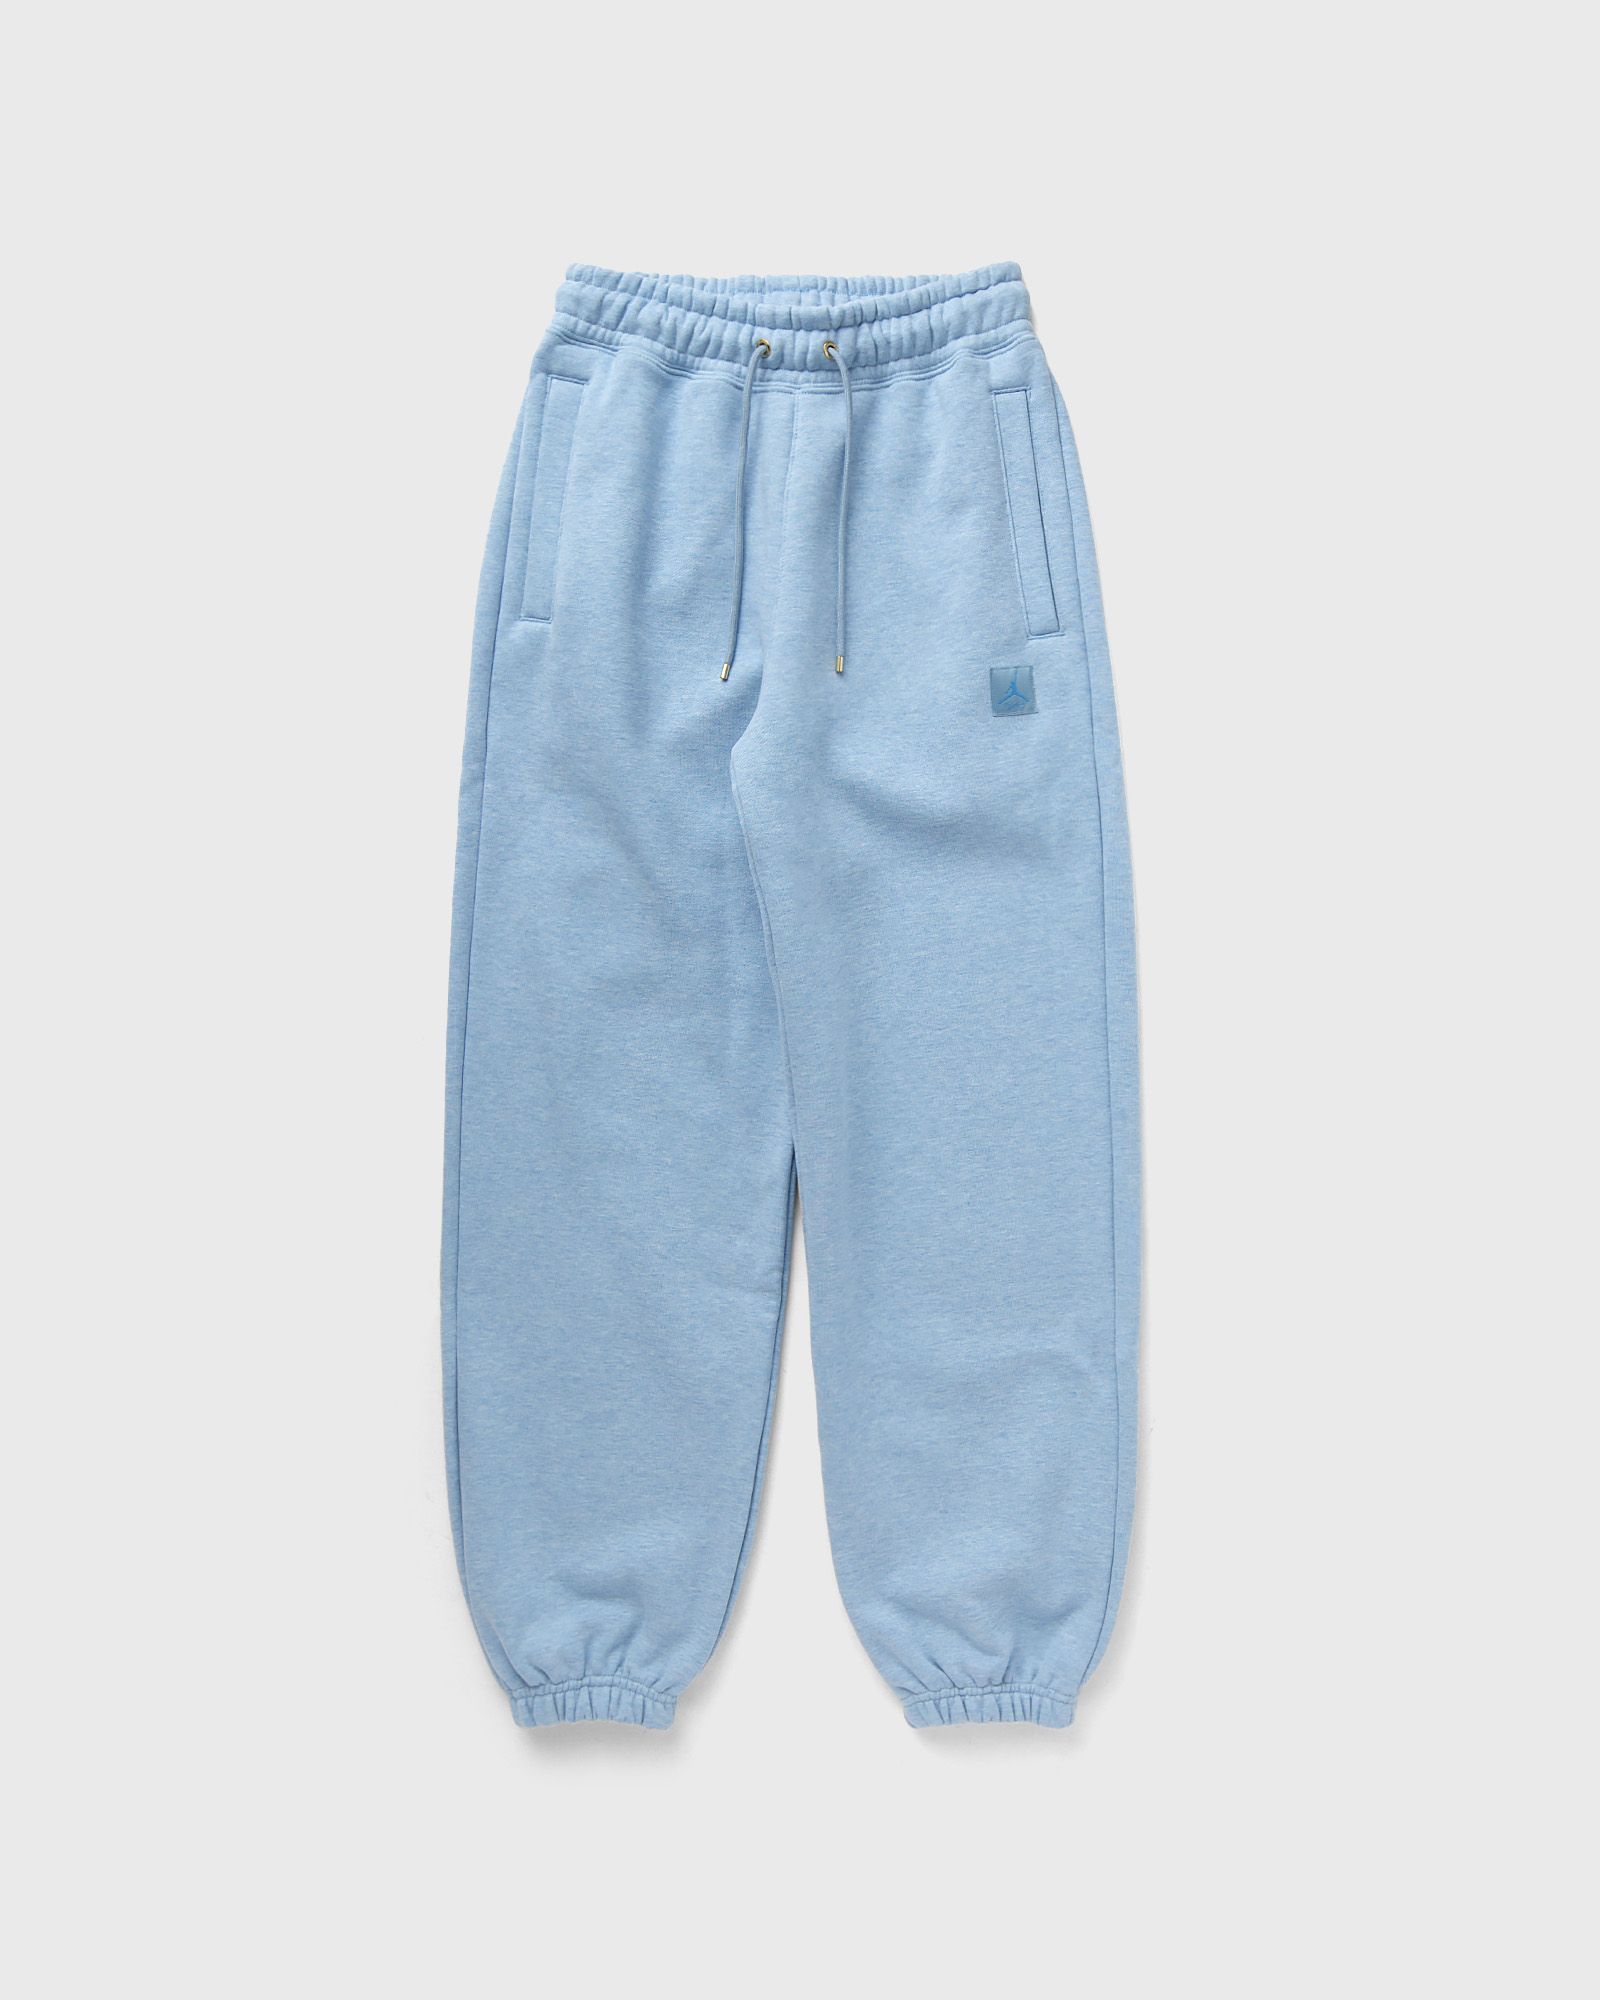 Jordan - wmns flight fleece pants women sweatpants blue in größe:l